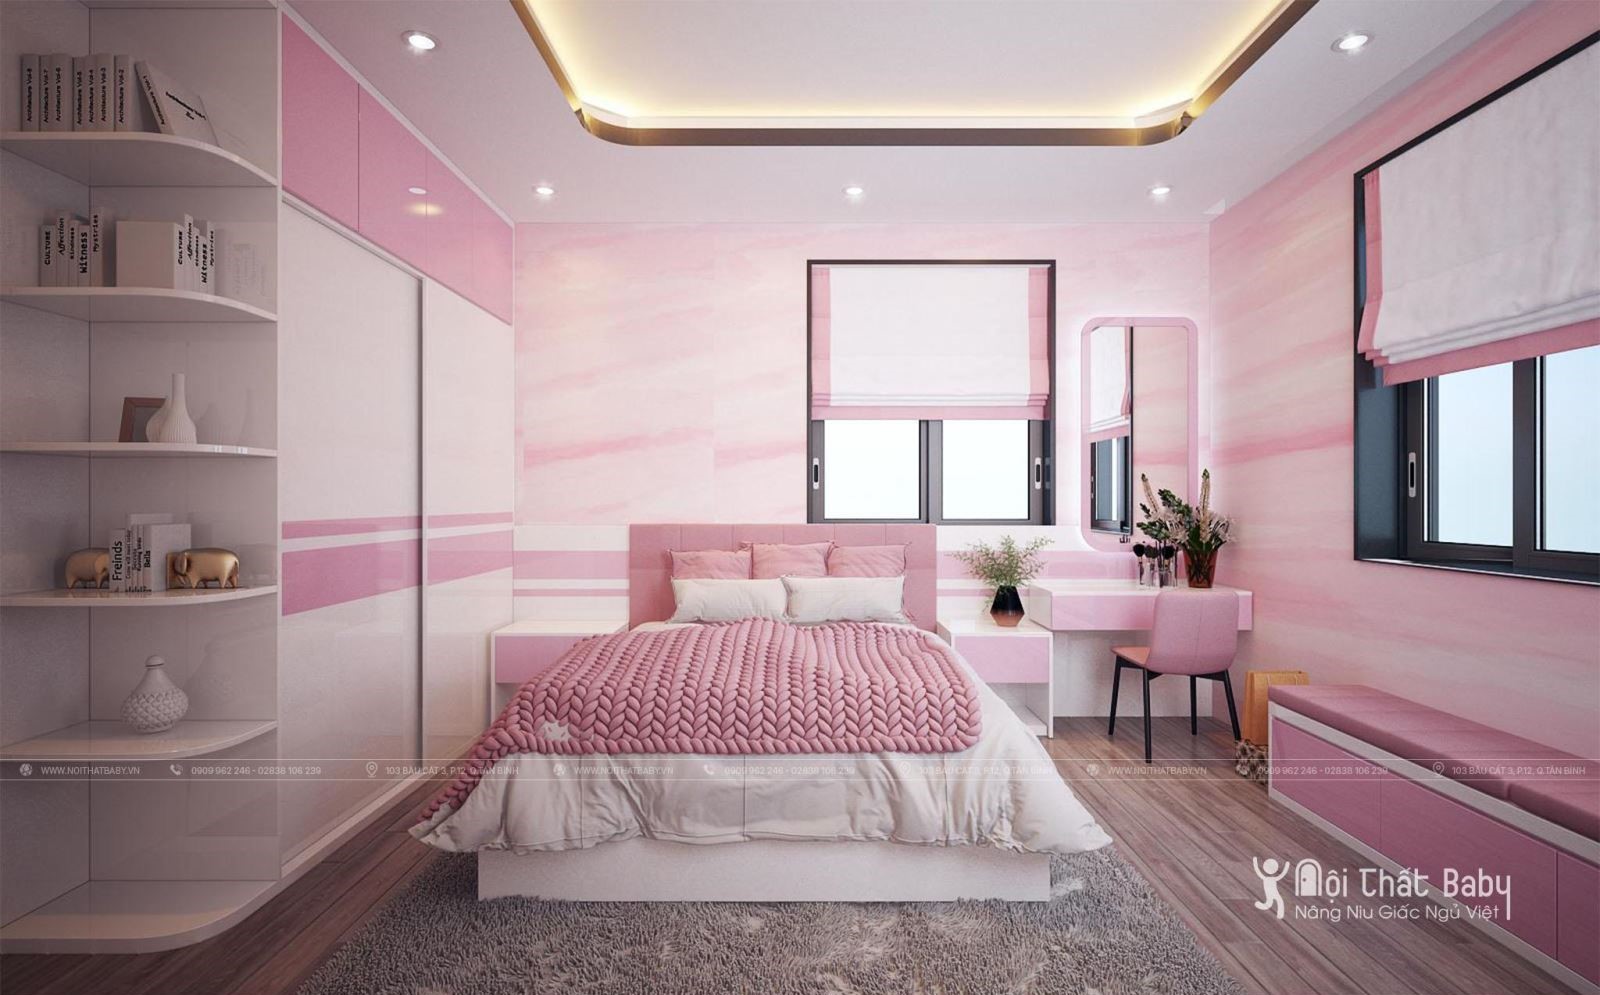 Top 27 mẫu giường ngủ đẹp nhất năm 2020 dành cho bé gái